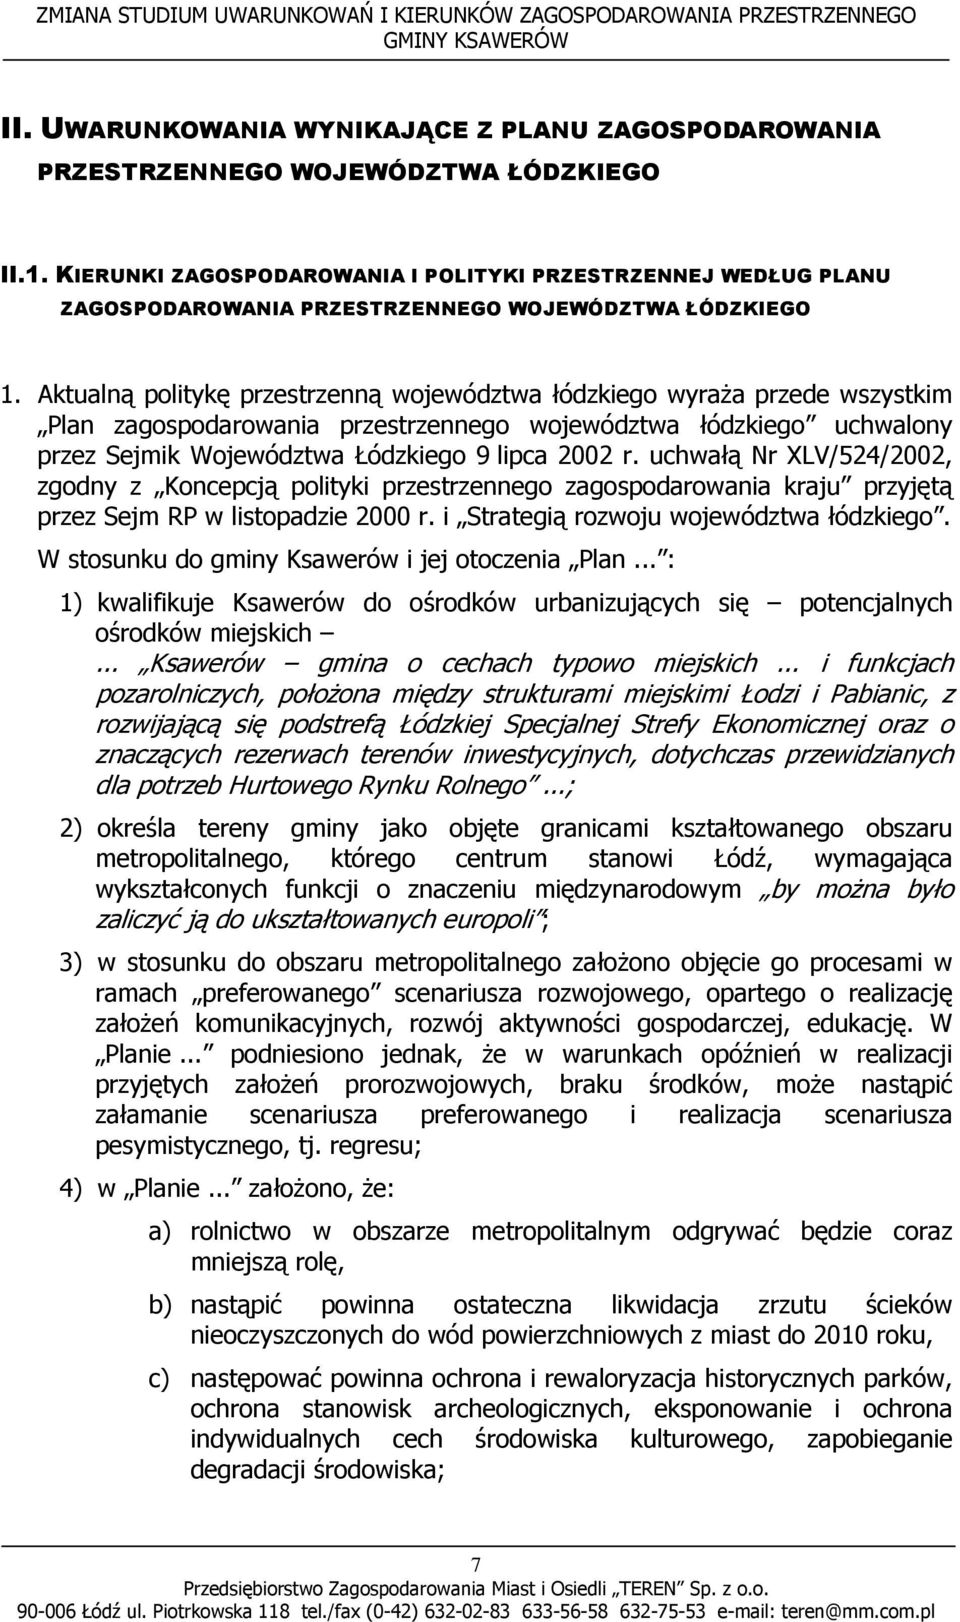 Aktualną politykę przestrzenną województwa łódzkiego wyraża przede wszystkim Plan zagospodarowania przestrzennego województwa łódzkiego uchwalony przez Sejmik Województwa Łódzkiego 9 lipca 2002 r.